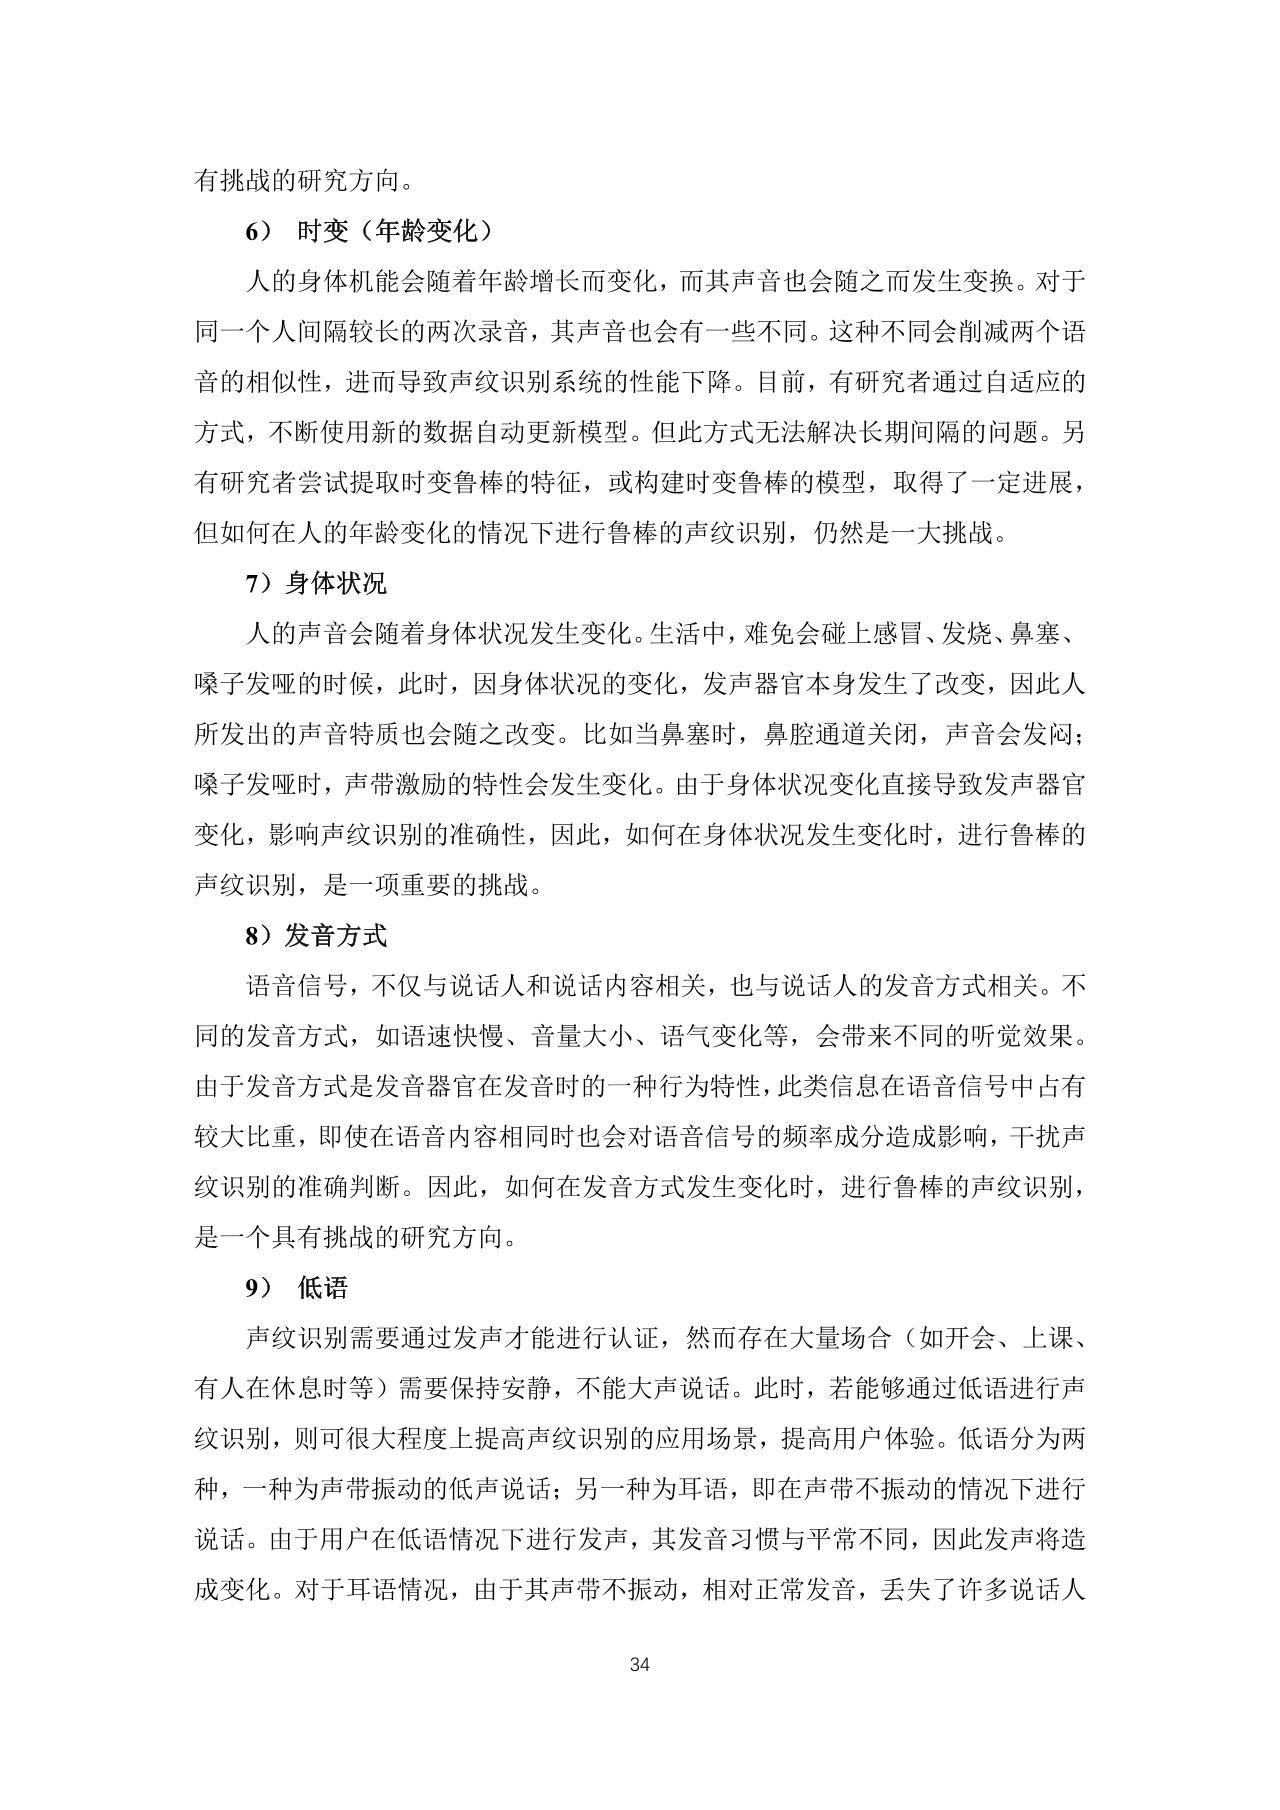 中国首份声纹识别产业发展白皮书-语音识别-undefined